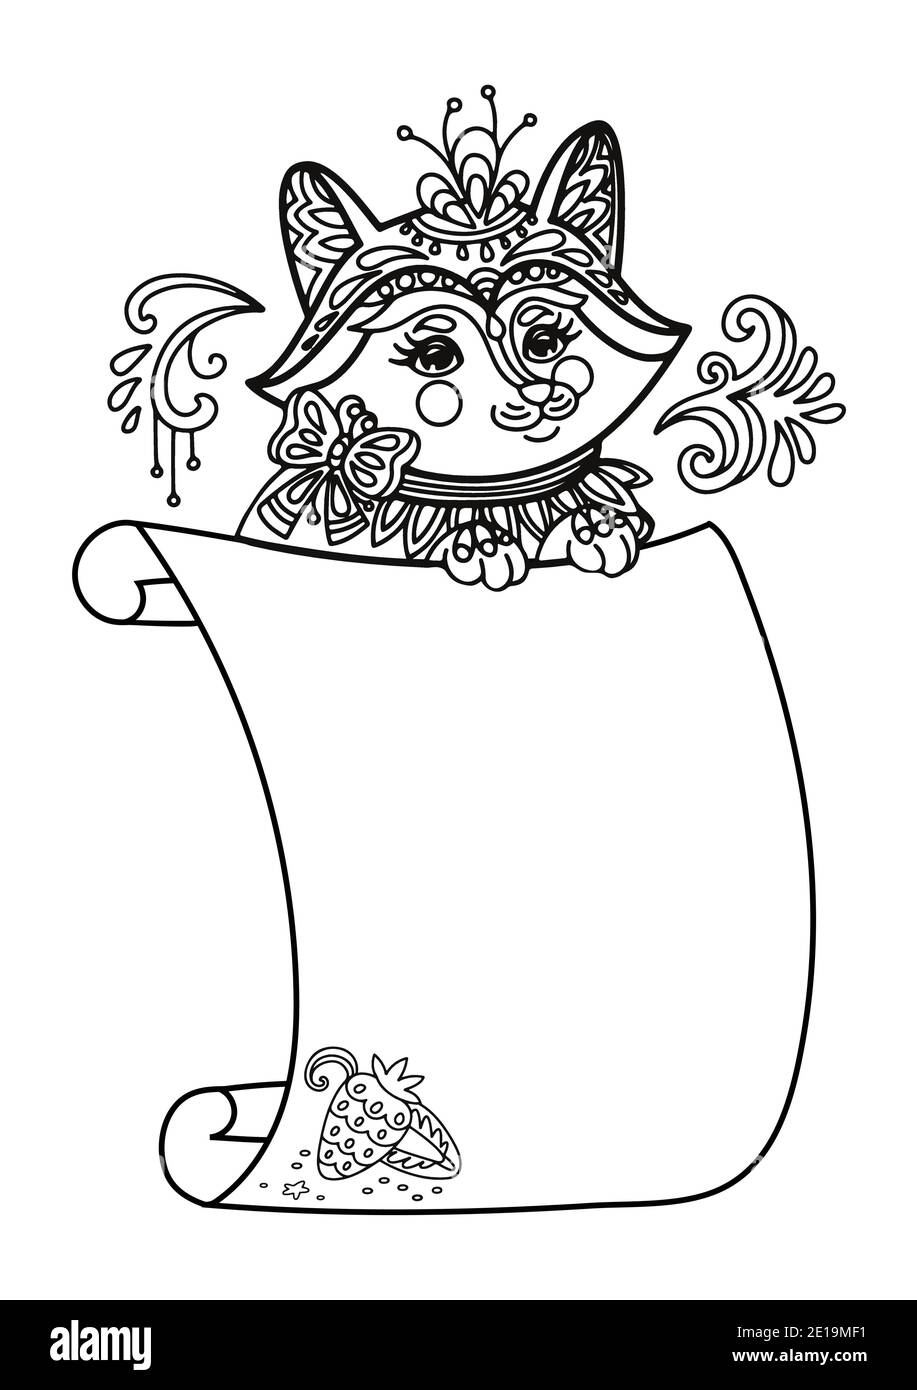 Joli renard avec gabarit de signe de défilement. Illustration de kawaii vectoriel monochrome avec motif animal en forme de nœuds et modèle de papier vierge vide. Pour l'impression, décochez Illustration de Vecteur